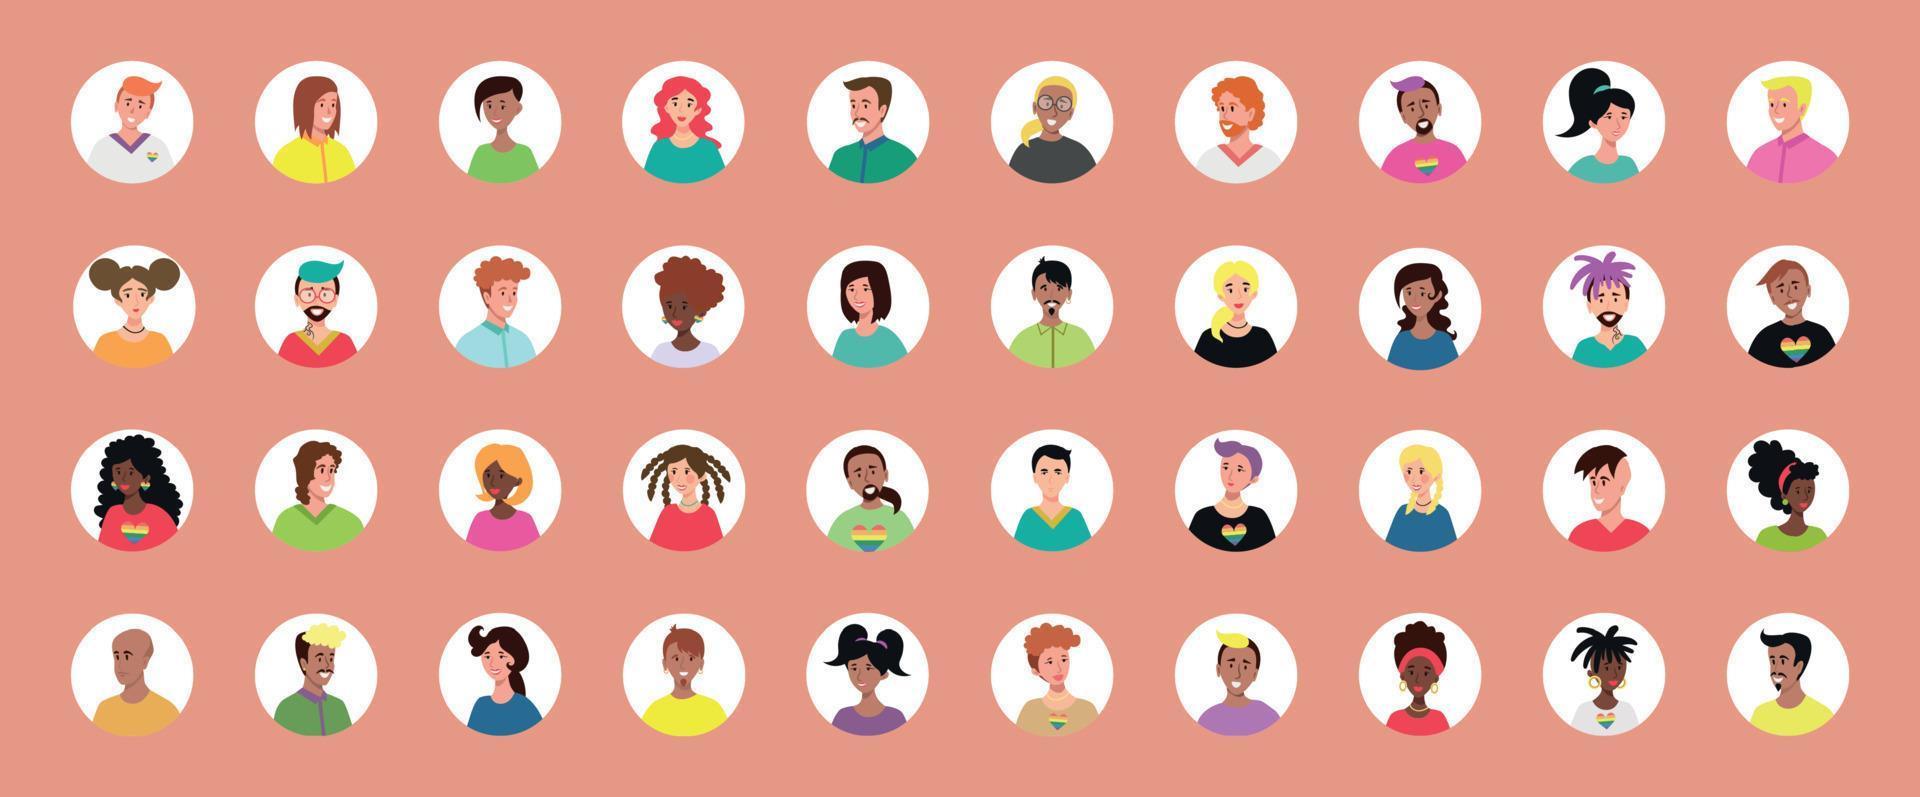 ensemble de 40 avatars encerclés avec des visages de jeunes. image de différentes races et nationalités, femmes et hommes. ensemble d'icônes de profil utilisateur. badges ronds avec des gens heureux - vecteur